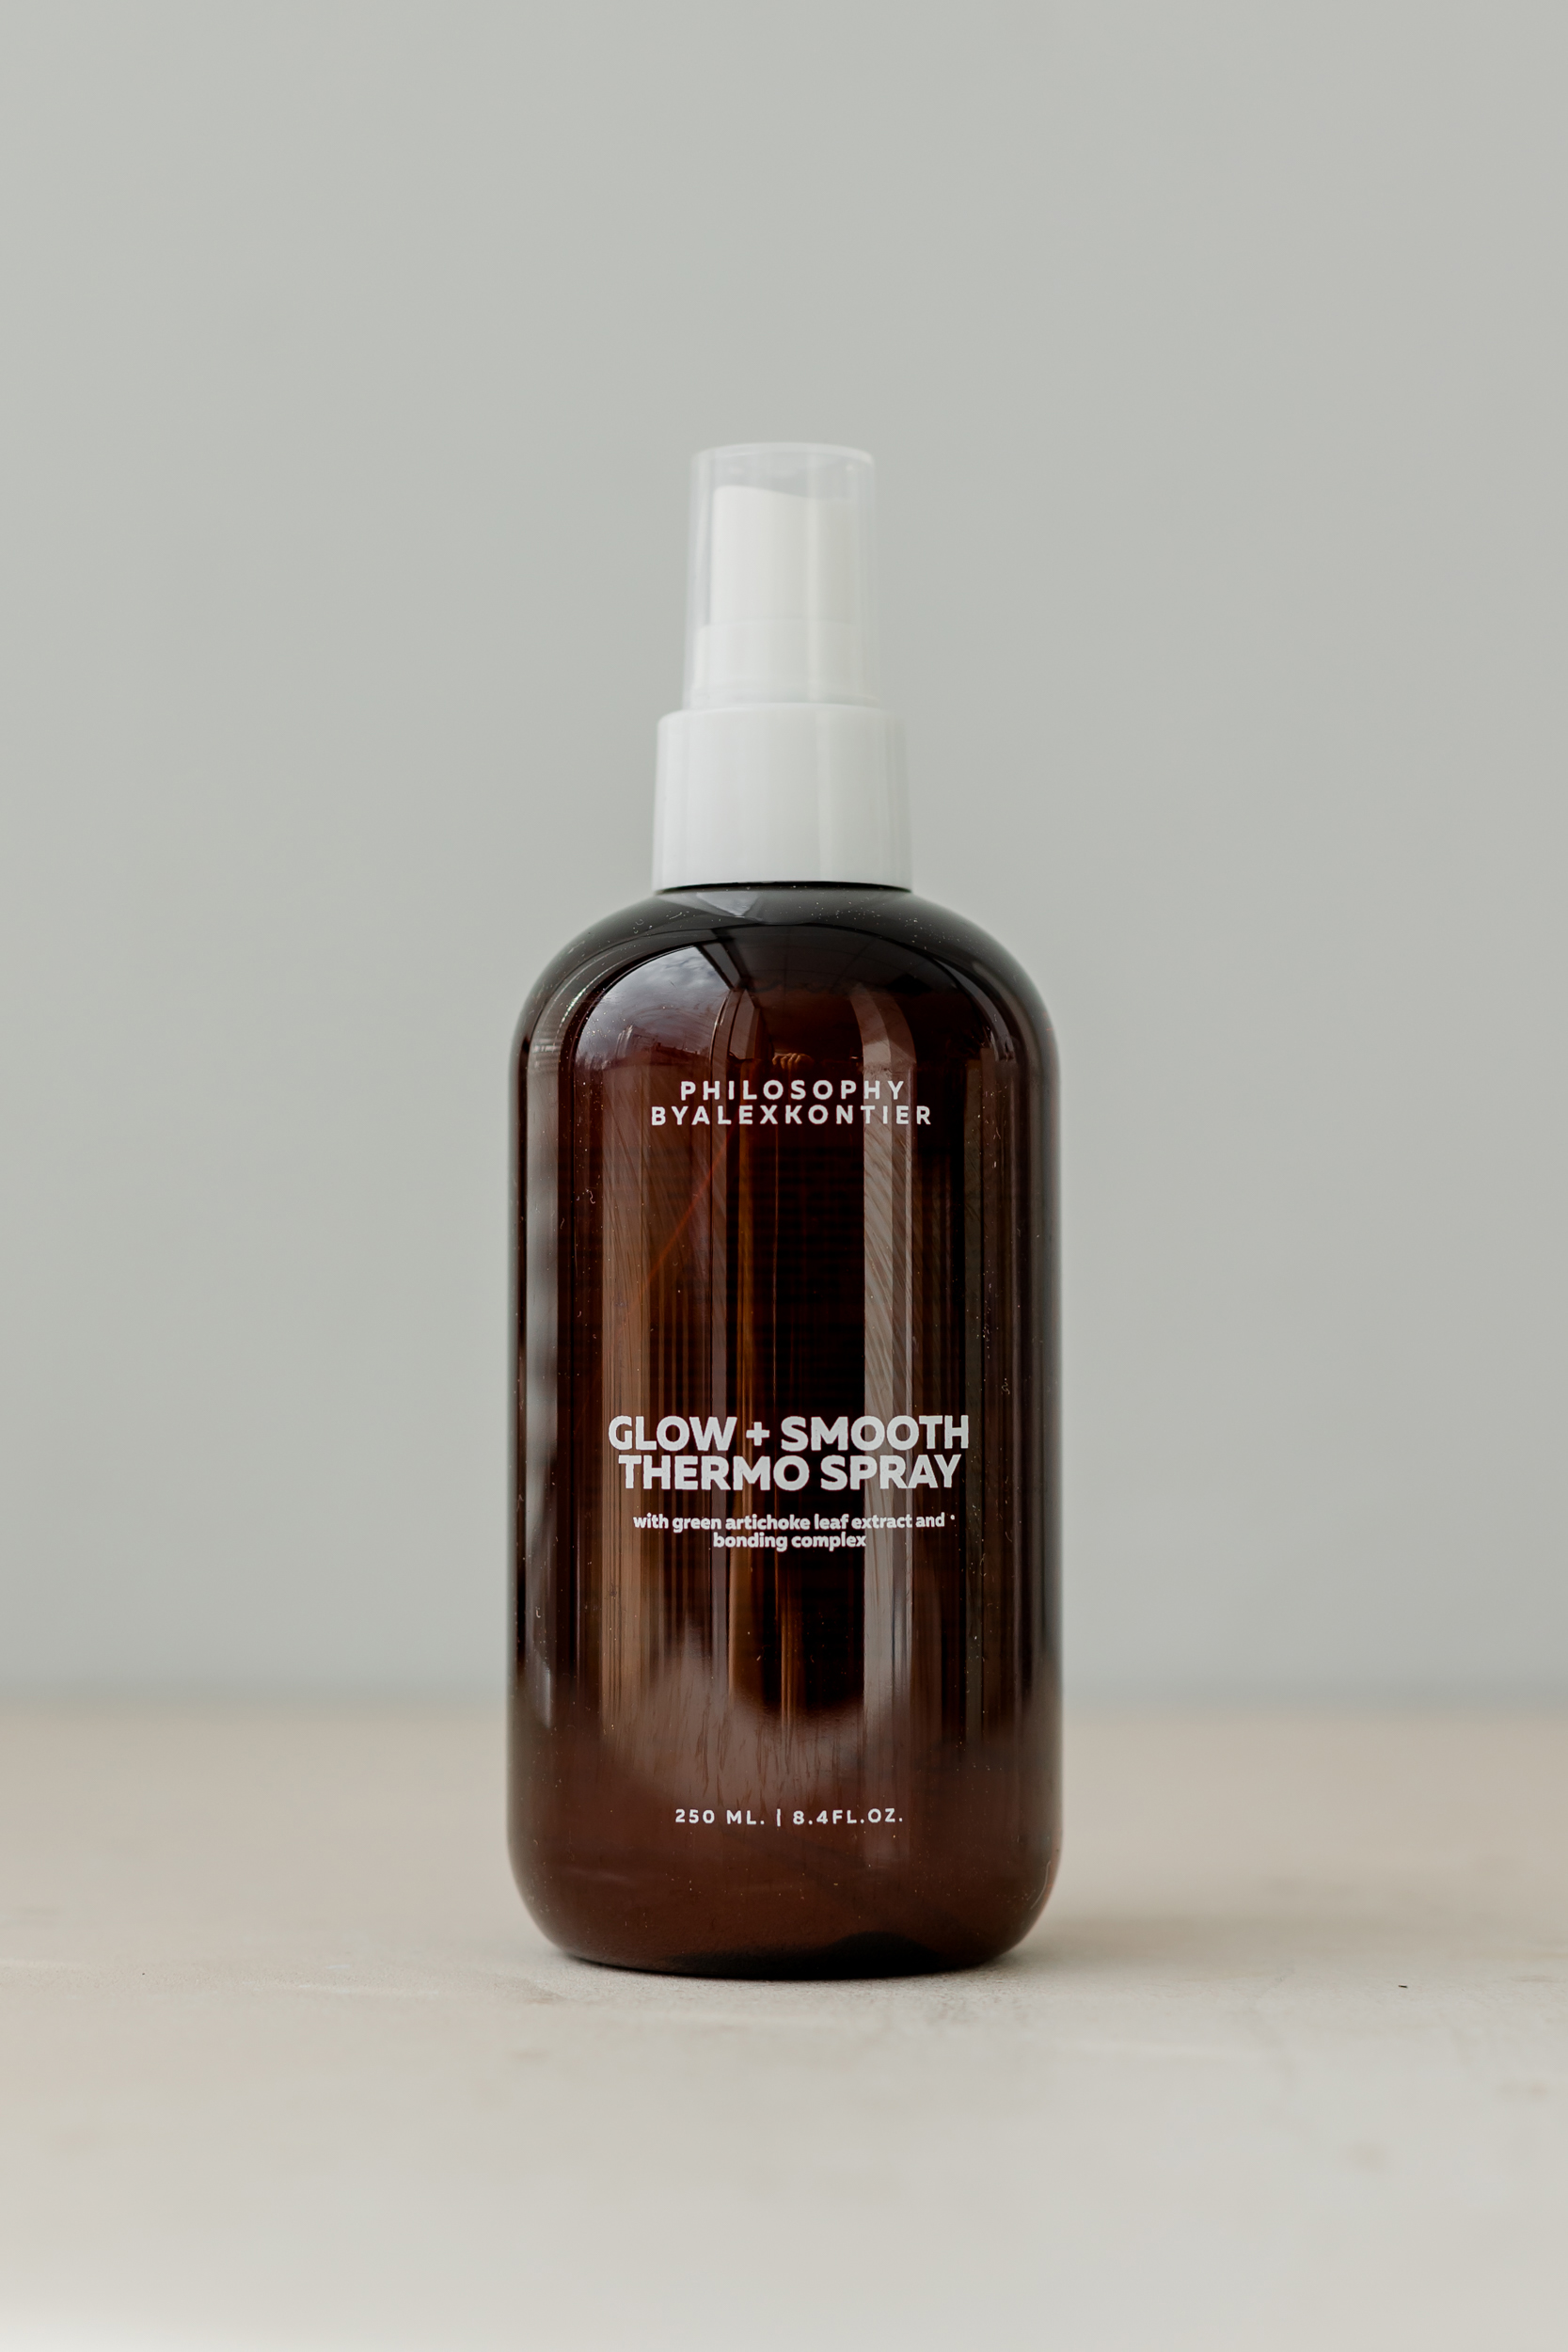 Термозащитный спрей для блеска и гладкости волос Philosophy By Alex Kontier Glow+Smooth Thermo Spray 250ml